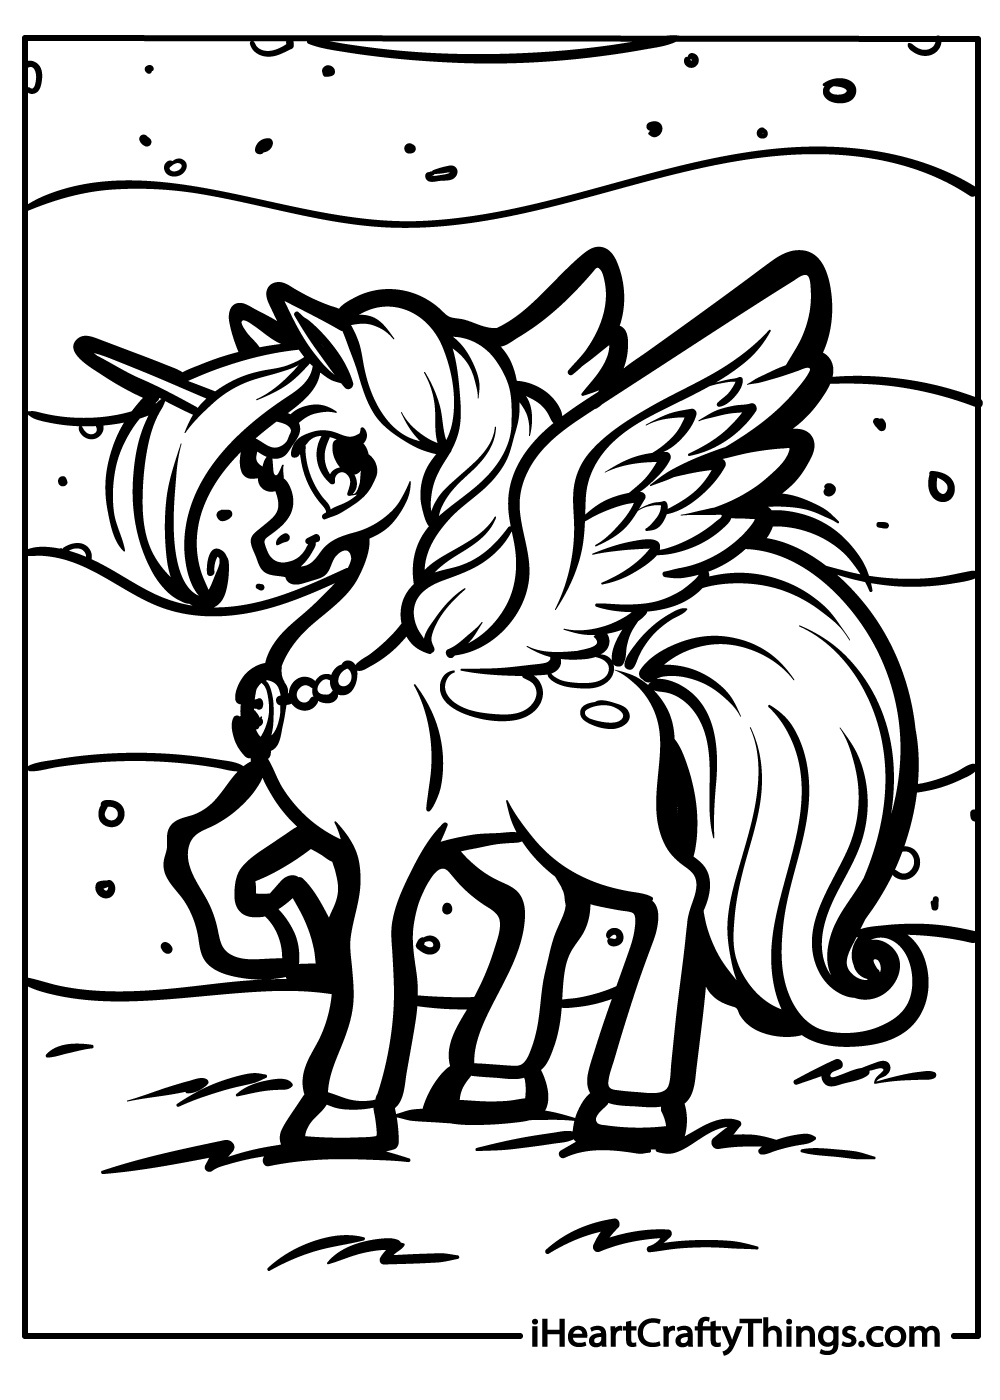 Pegasus free coloring sheet